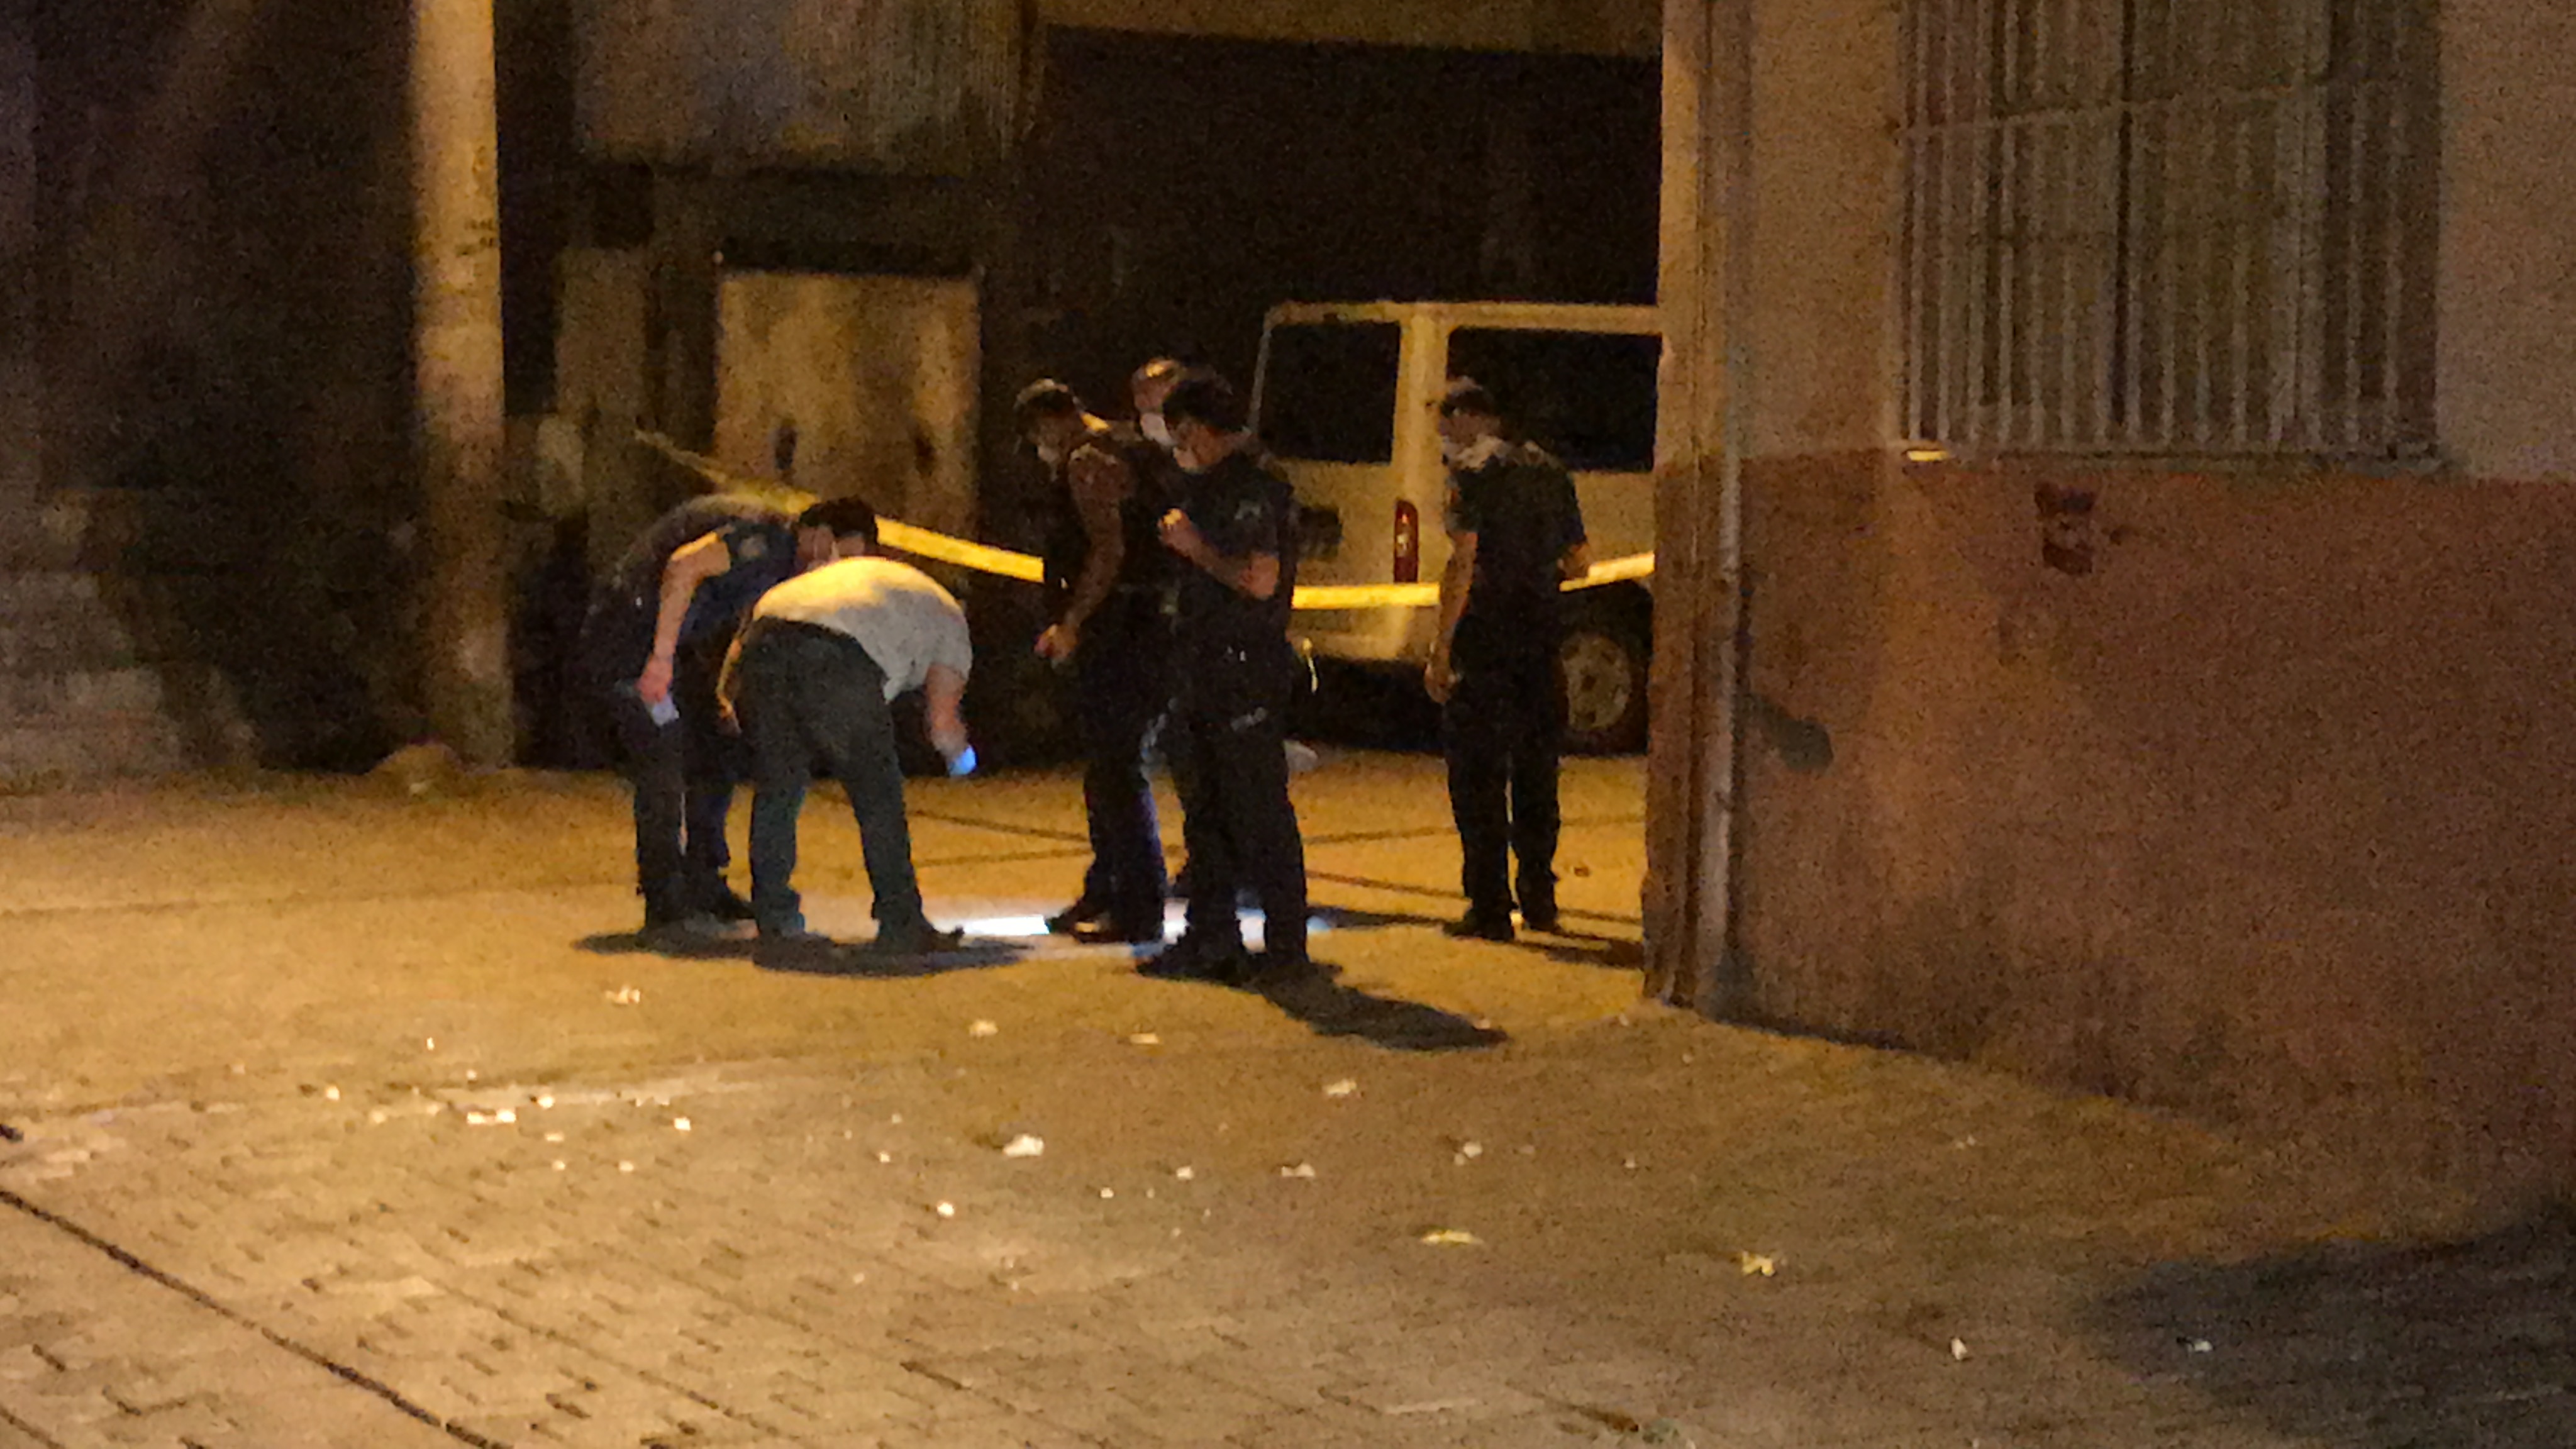 diyarbakirda-polis-ve-saglik-ekipleri-catismanin-ortasinda-kaldi-7450-dhaphoto2.jpg